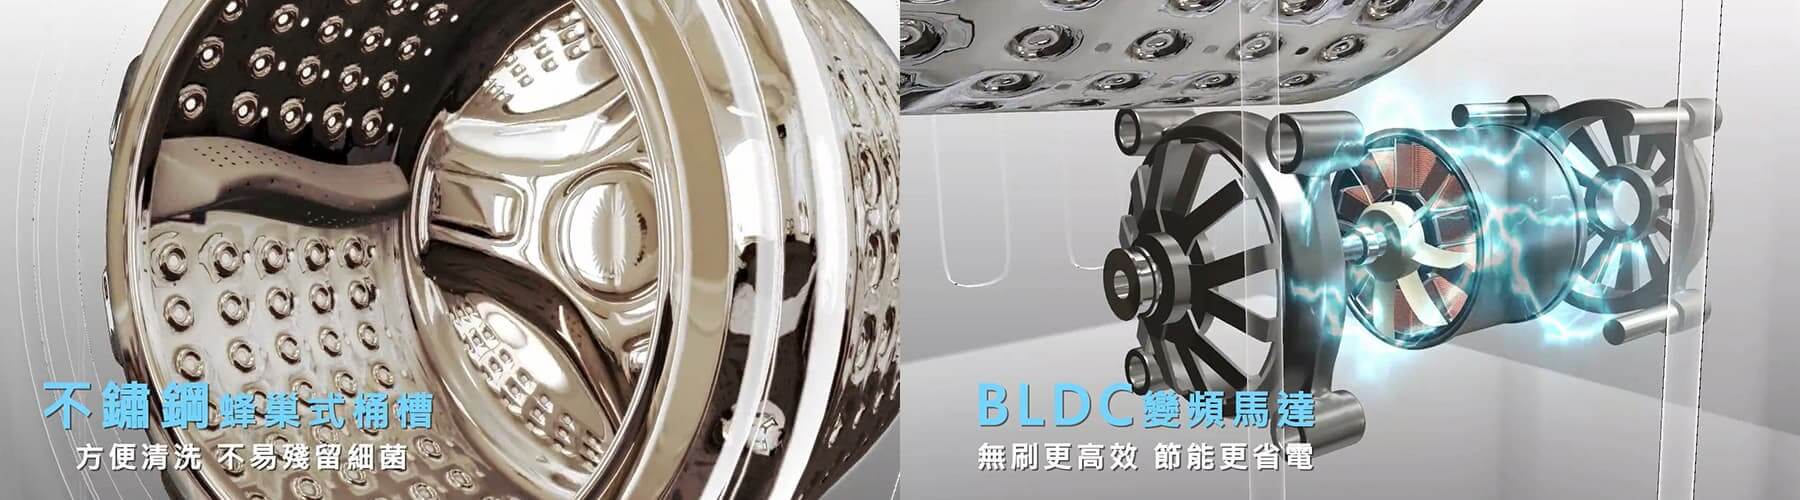 HERAN蒸氣洗滾筒式洗衣機產品介紹3D動畫影片-2